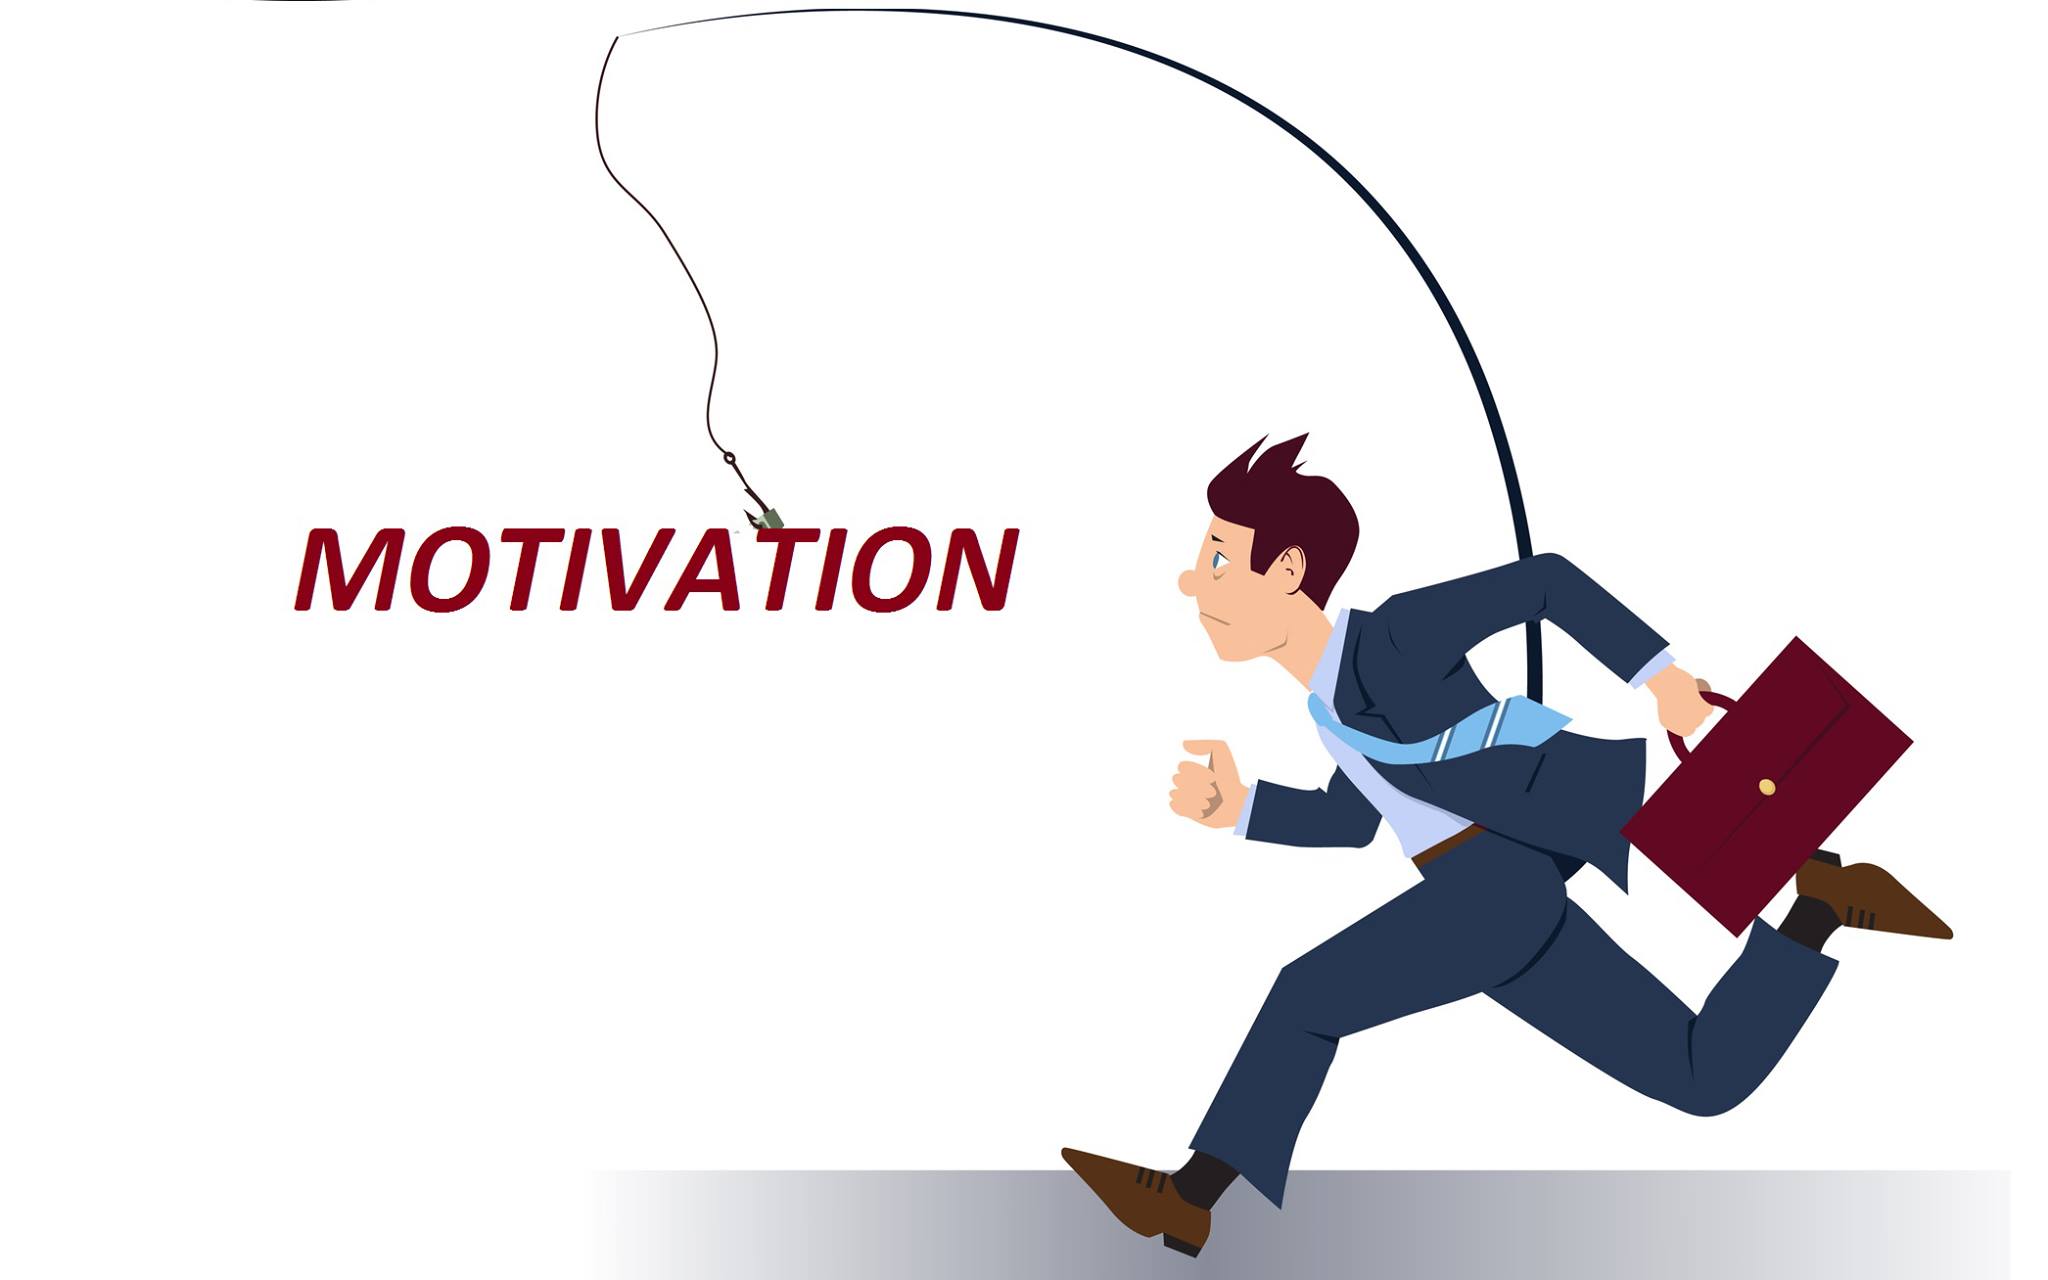 စိတ်အားထက်သန်တက်ကြွမှုအတွက် အခြေခံမူ ၉ ချက် (The Nine Principles of Motivation)